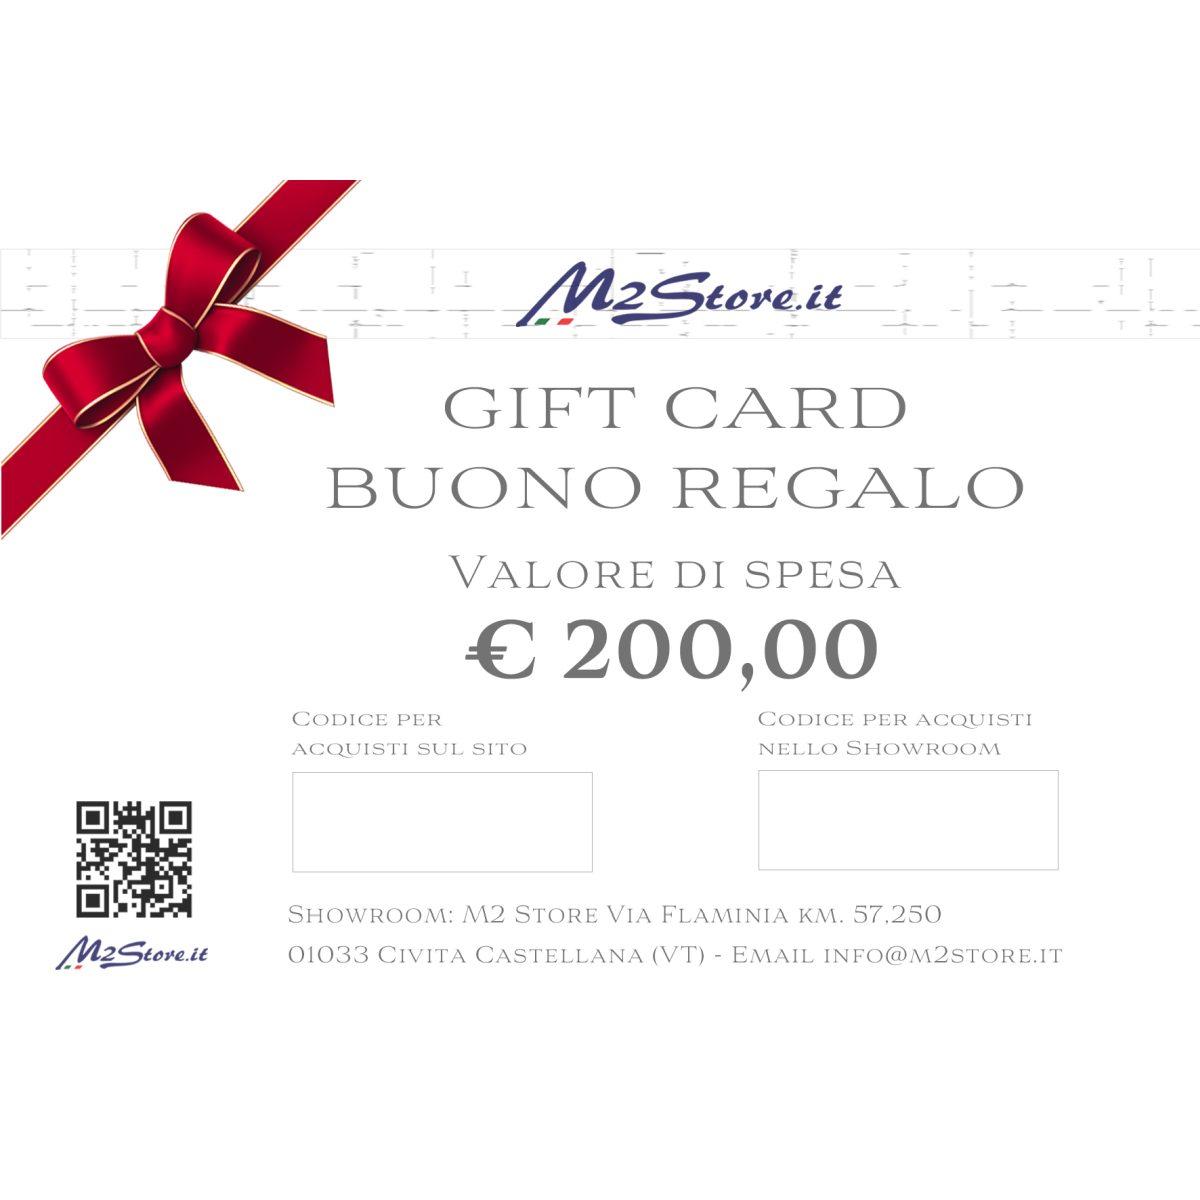 Gift Card in Cofanetto del valore di 200 euro